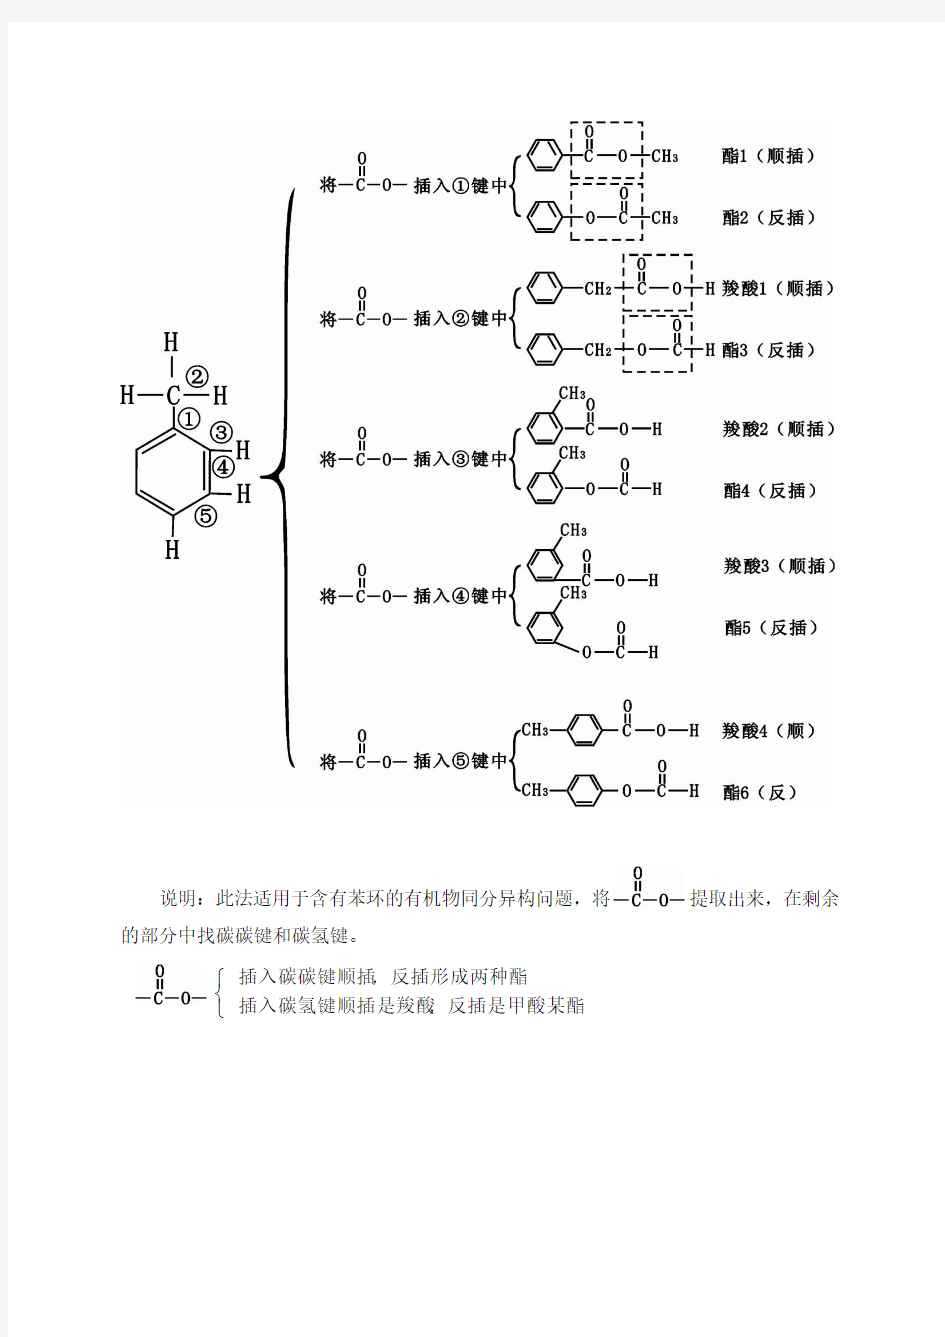 关于羧酸与酯同分异构体问题的解题技巧